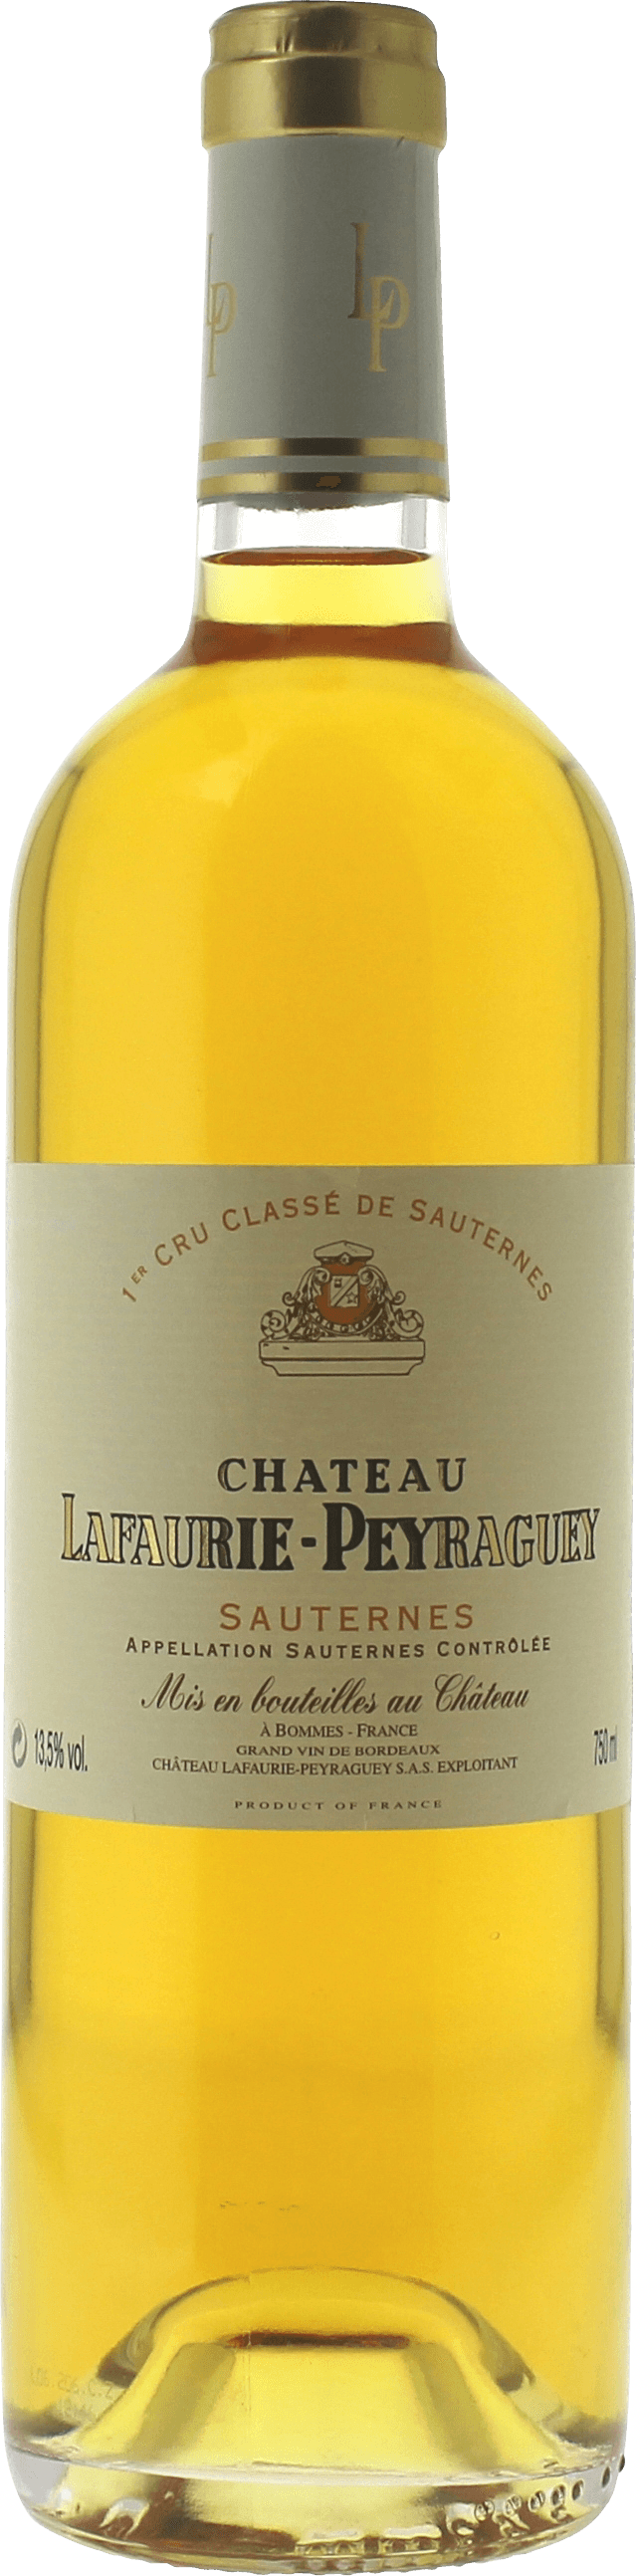 Lafaurie peyraguey 2004  Sauternes, Bordeaux blanc